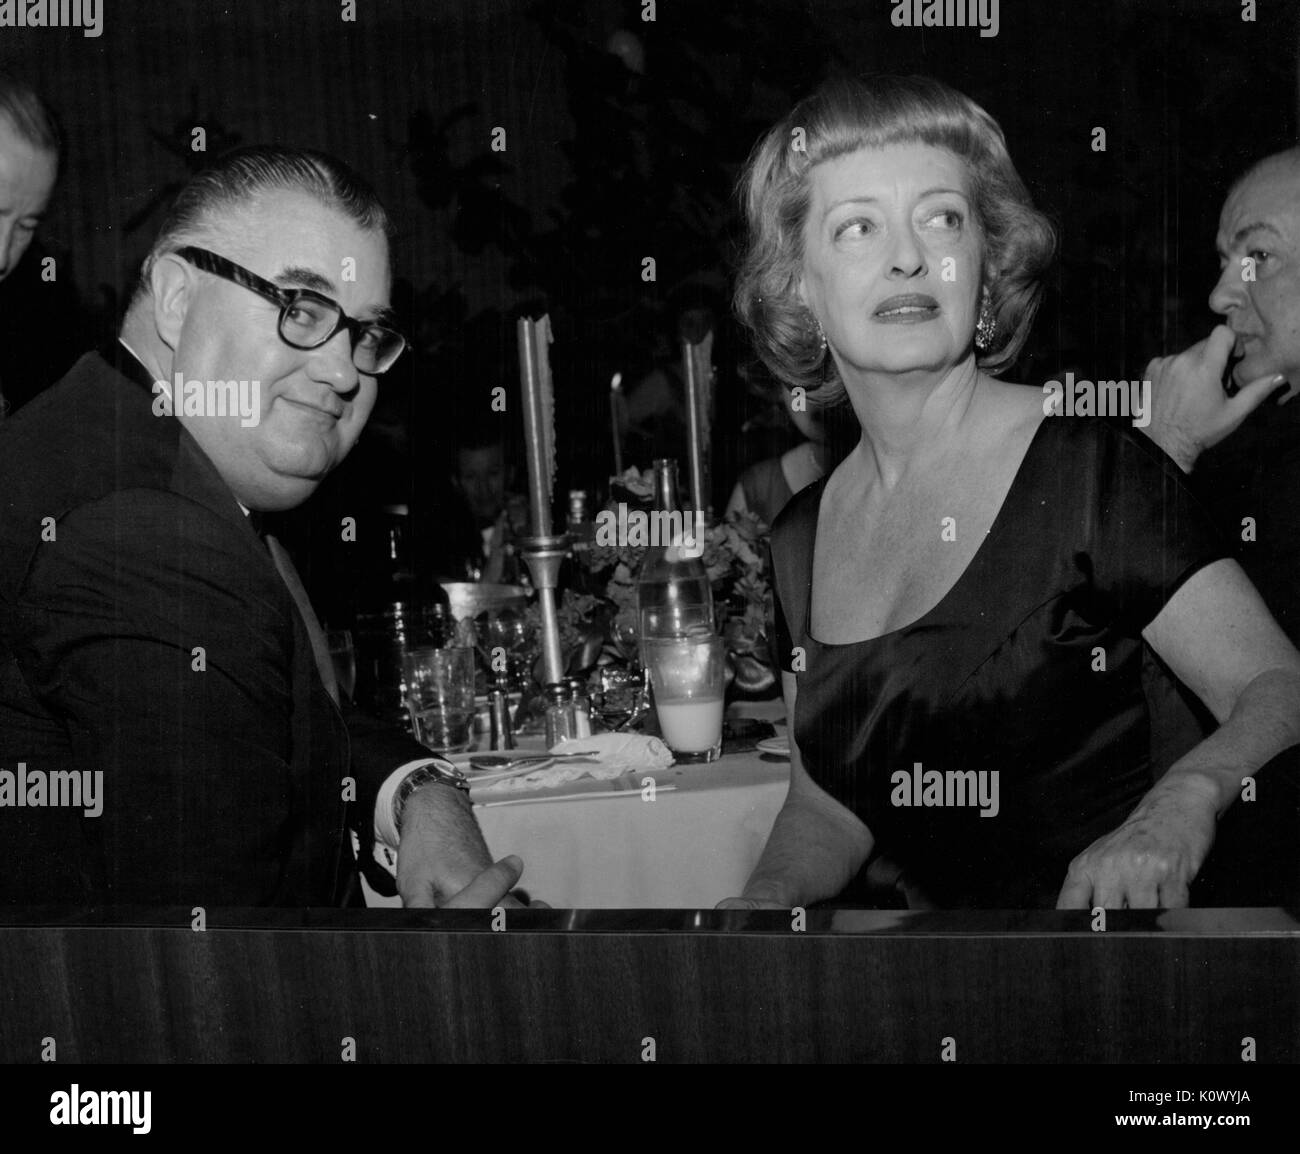 Bette Davis, sitzen bei einem Bankett Tisch mit einem nicht identifizierten Mann, um in ihren Stuhl und schaut, um ihr Recht, in einem dunklen Zimmer bei einem Abendessen, Hollywood, Kalifornien, Hollywood, Kalifornien, 1950. Photo credit Smith Collection/Gado/Getty Images. Stockfoto